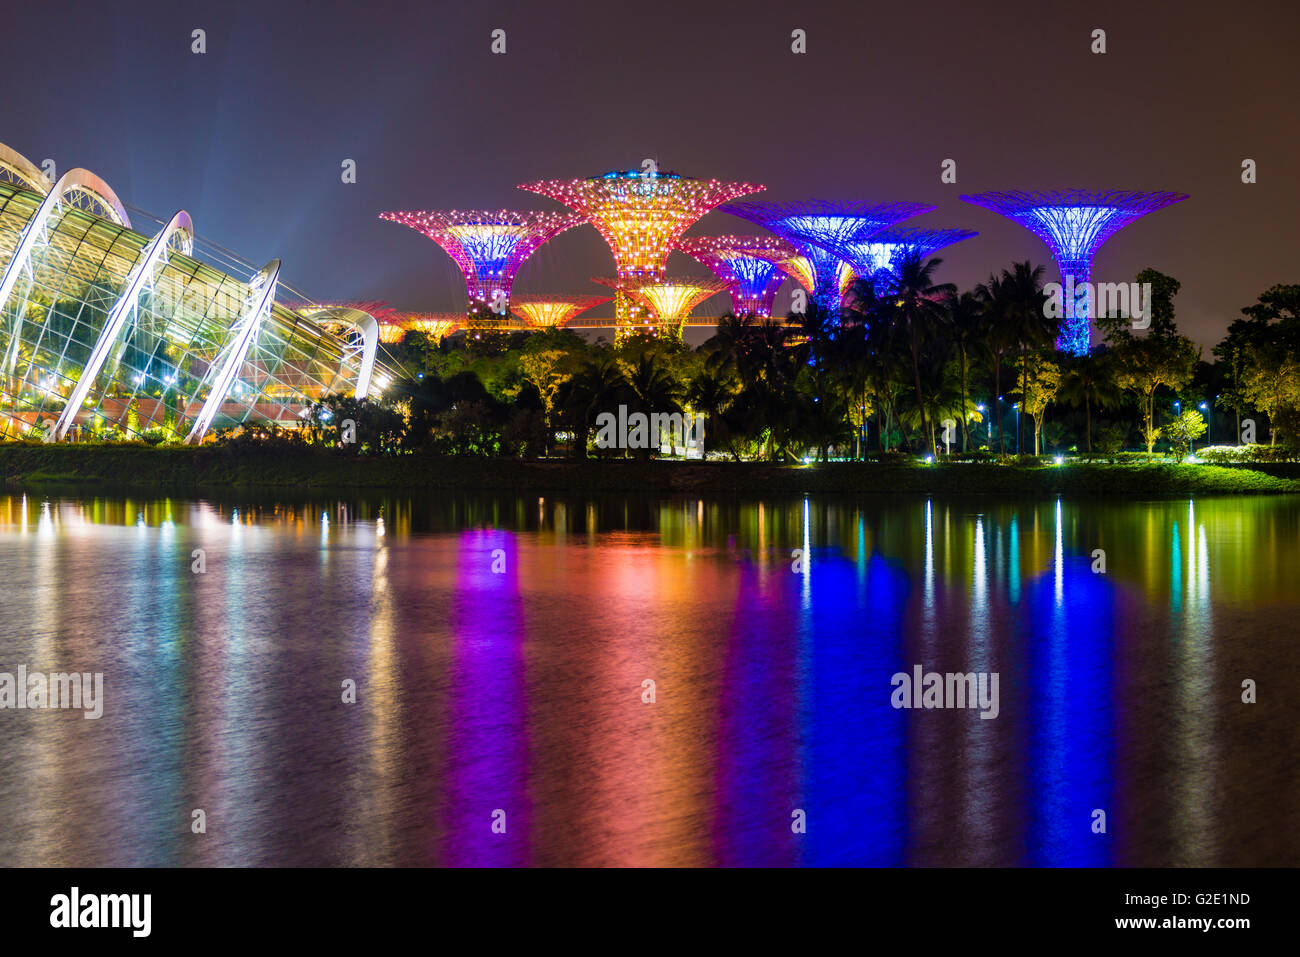 La réflexion de l'eau la nuit, Super arbres, jardins de fleurs, par la baie de Marina Bay, Centre-ville, Singapour Banque D'Images